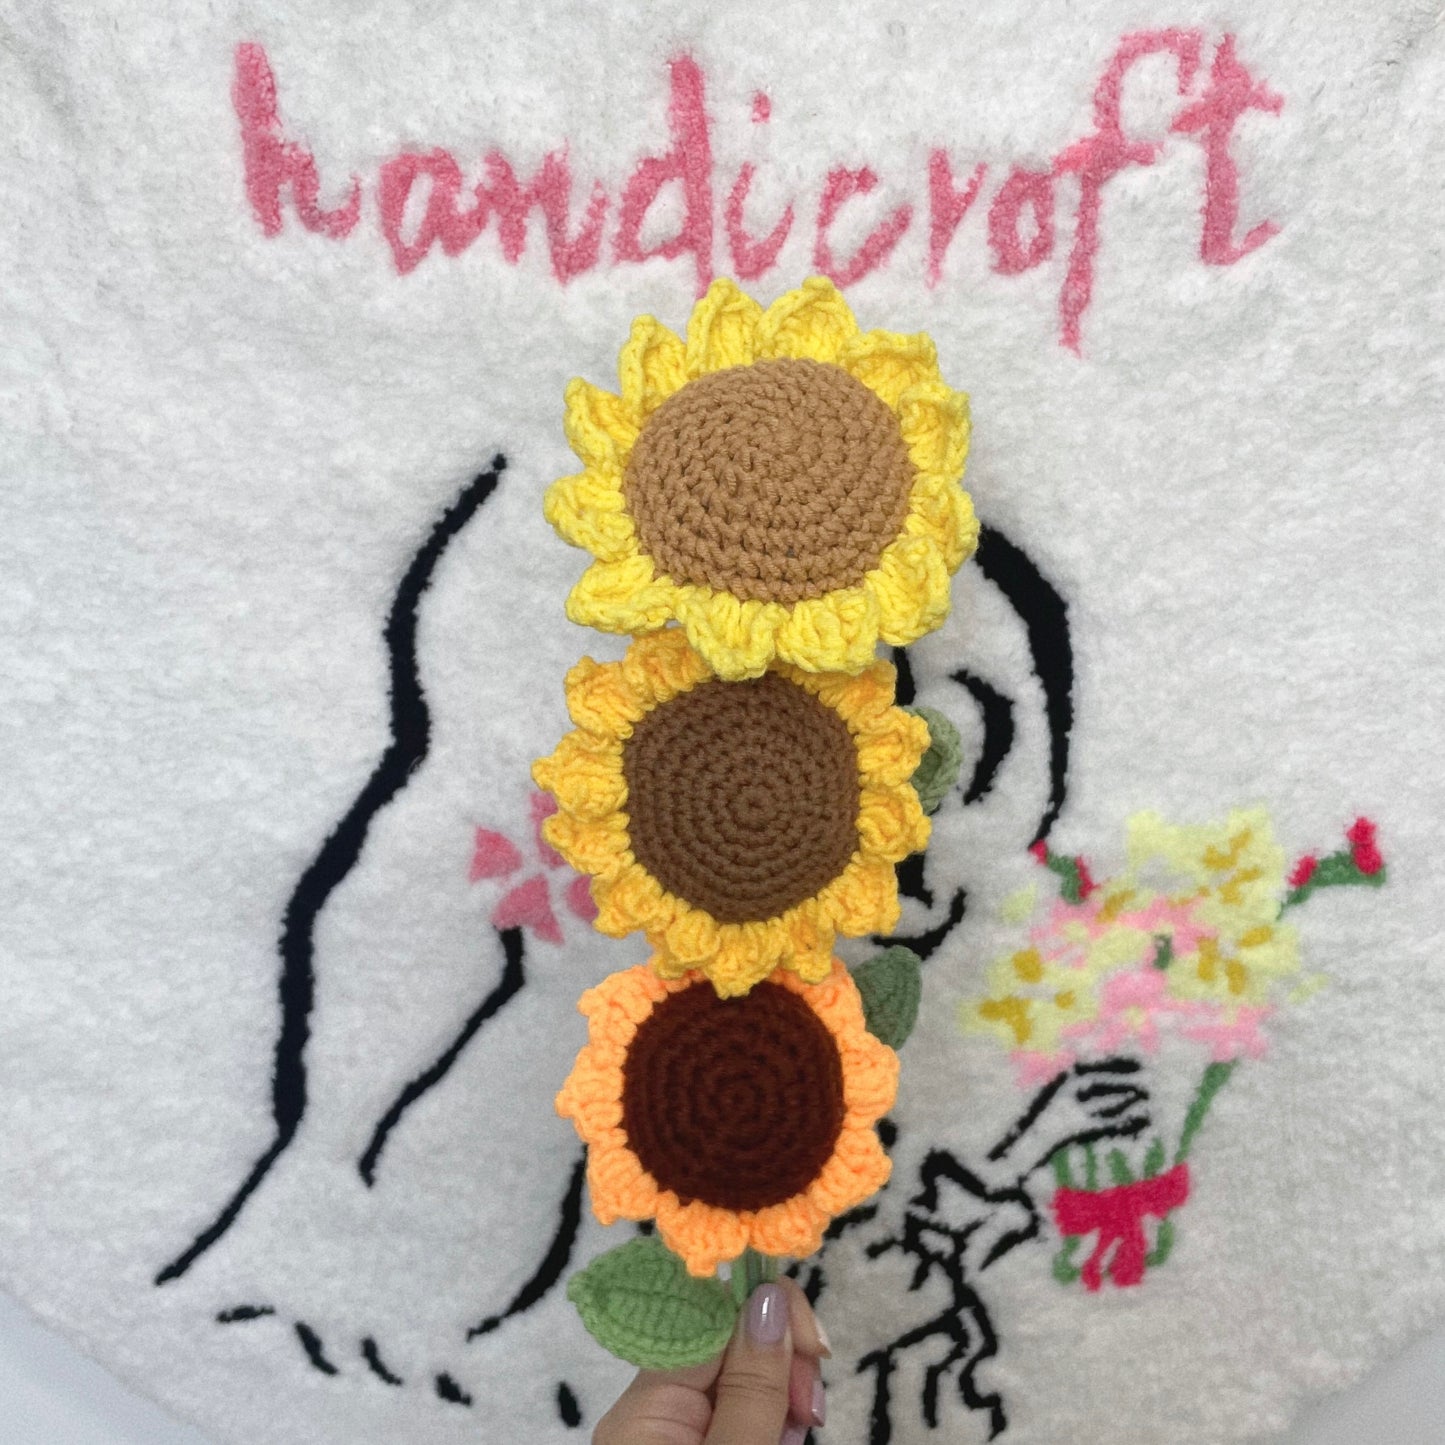 crochet sunflower single stalk ᡣ𐭩🌻₊ ⊹